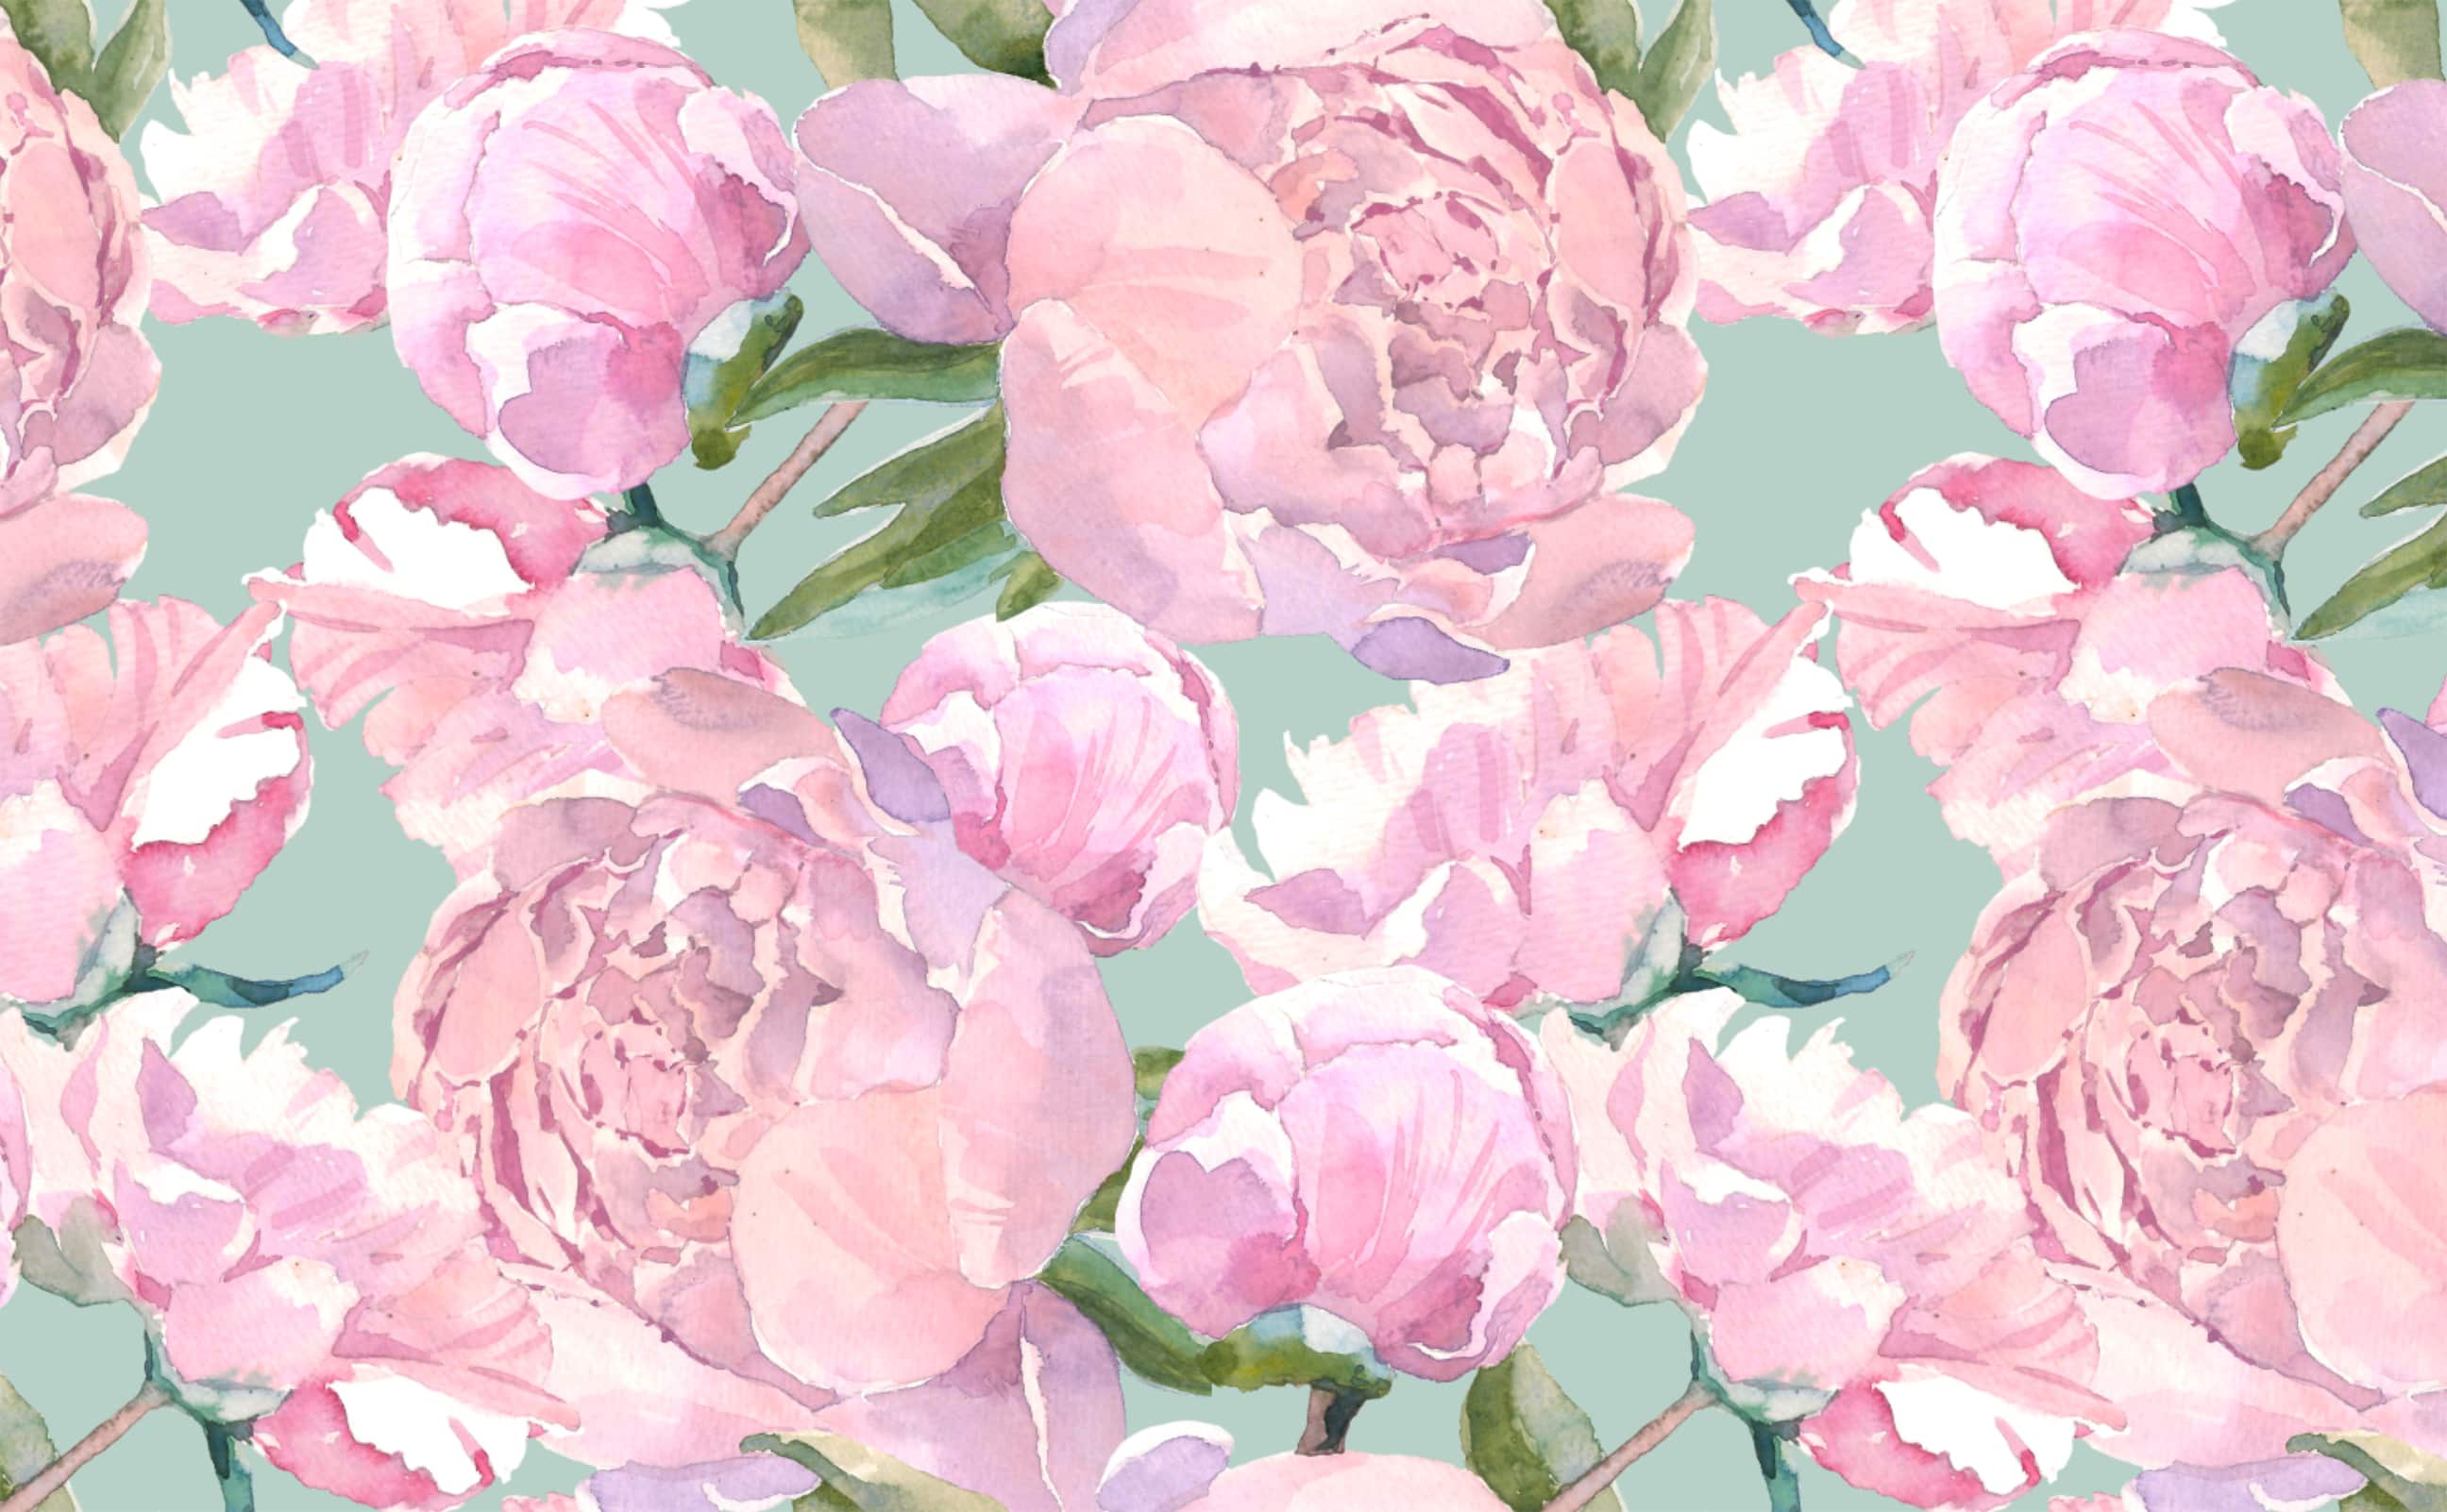 Nền hoa hồng vintage màu hồng nhạt sẽ mang đến cho màn hình của bạn một phong cách đầy cổ điển và lãng mạn. Gần như một bức tranh nghệ thuật, hình nền này có chứa đựng những đường hoa nổi bật và màu sắc tinh tế. Hãy truy cập hình ảnh để thưởng thức sự đẹp của nó!